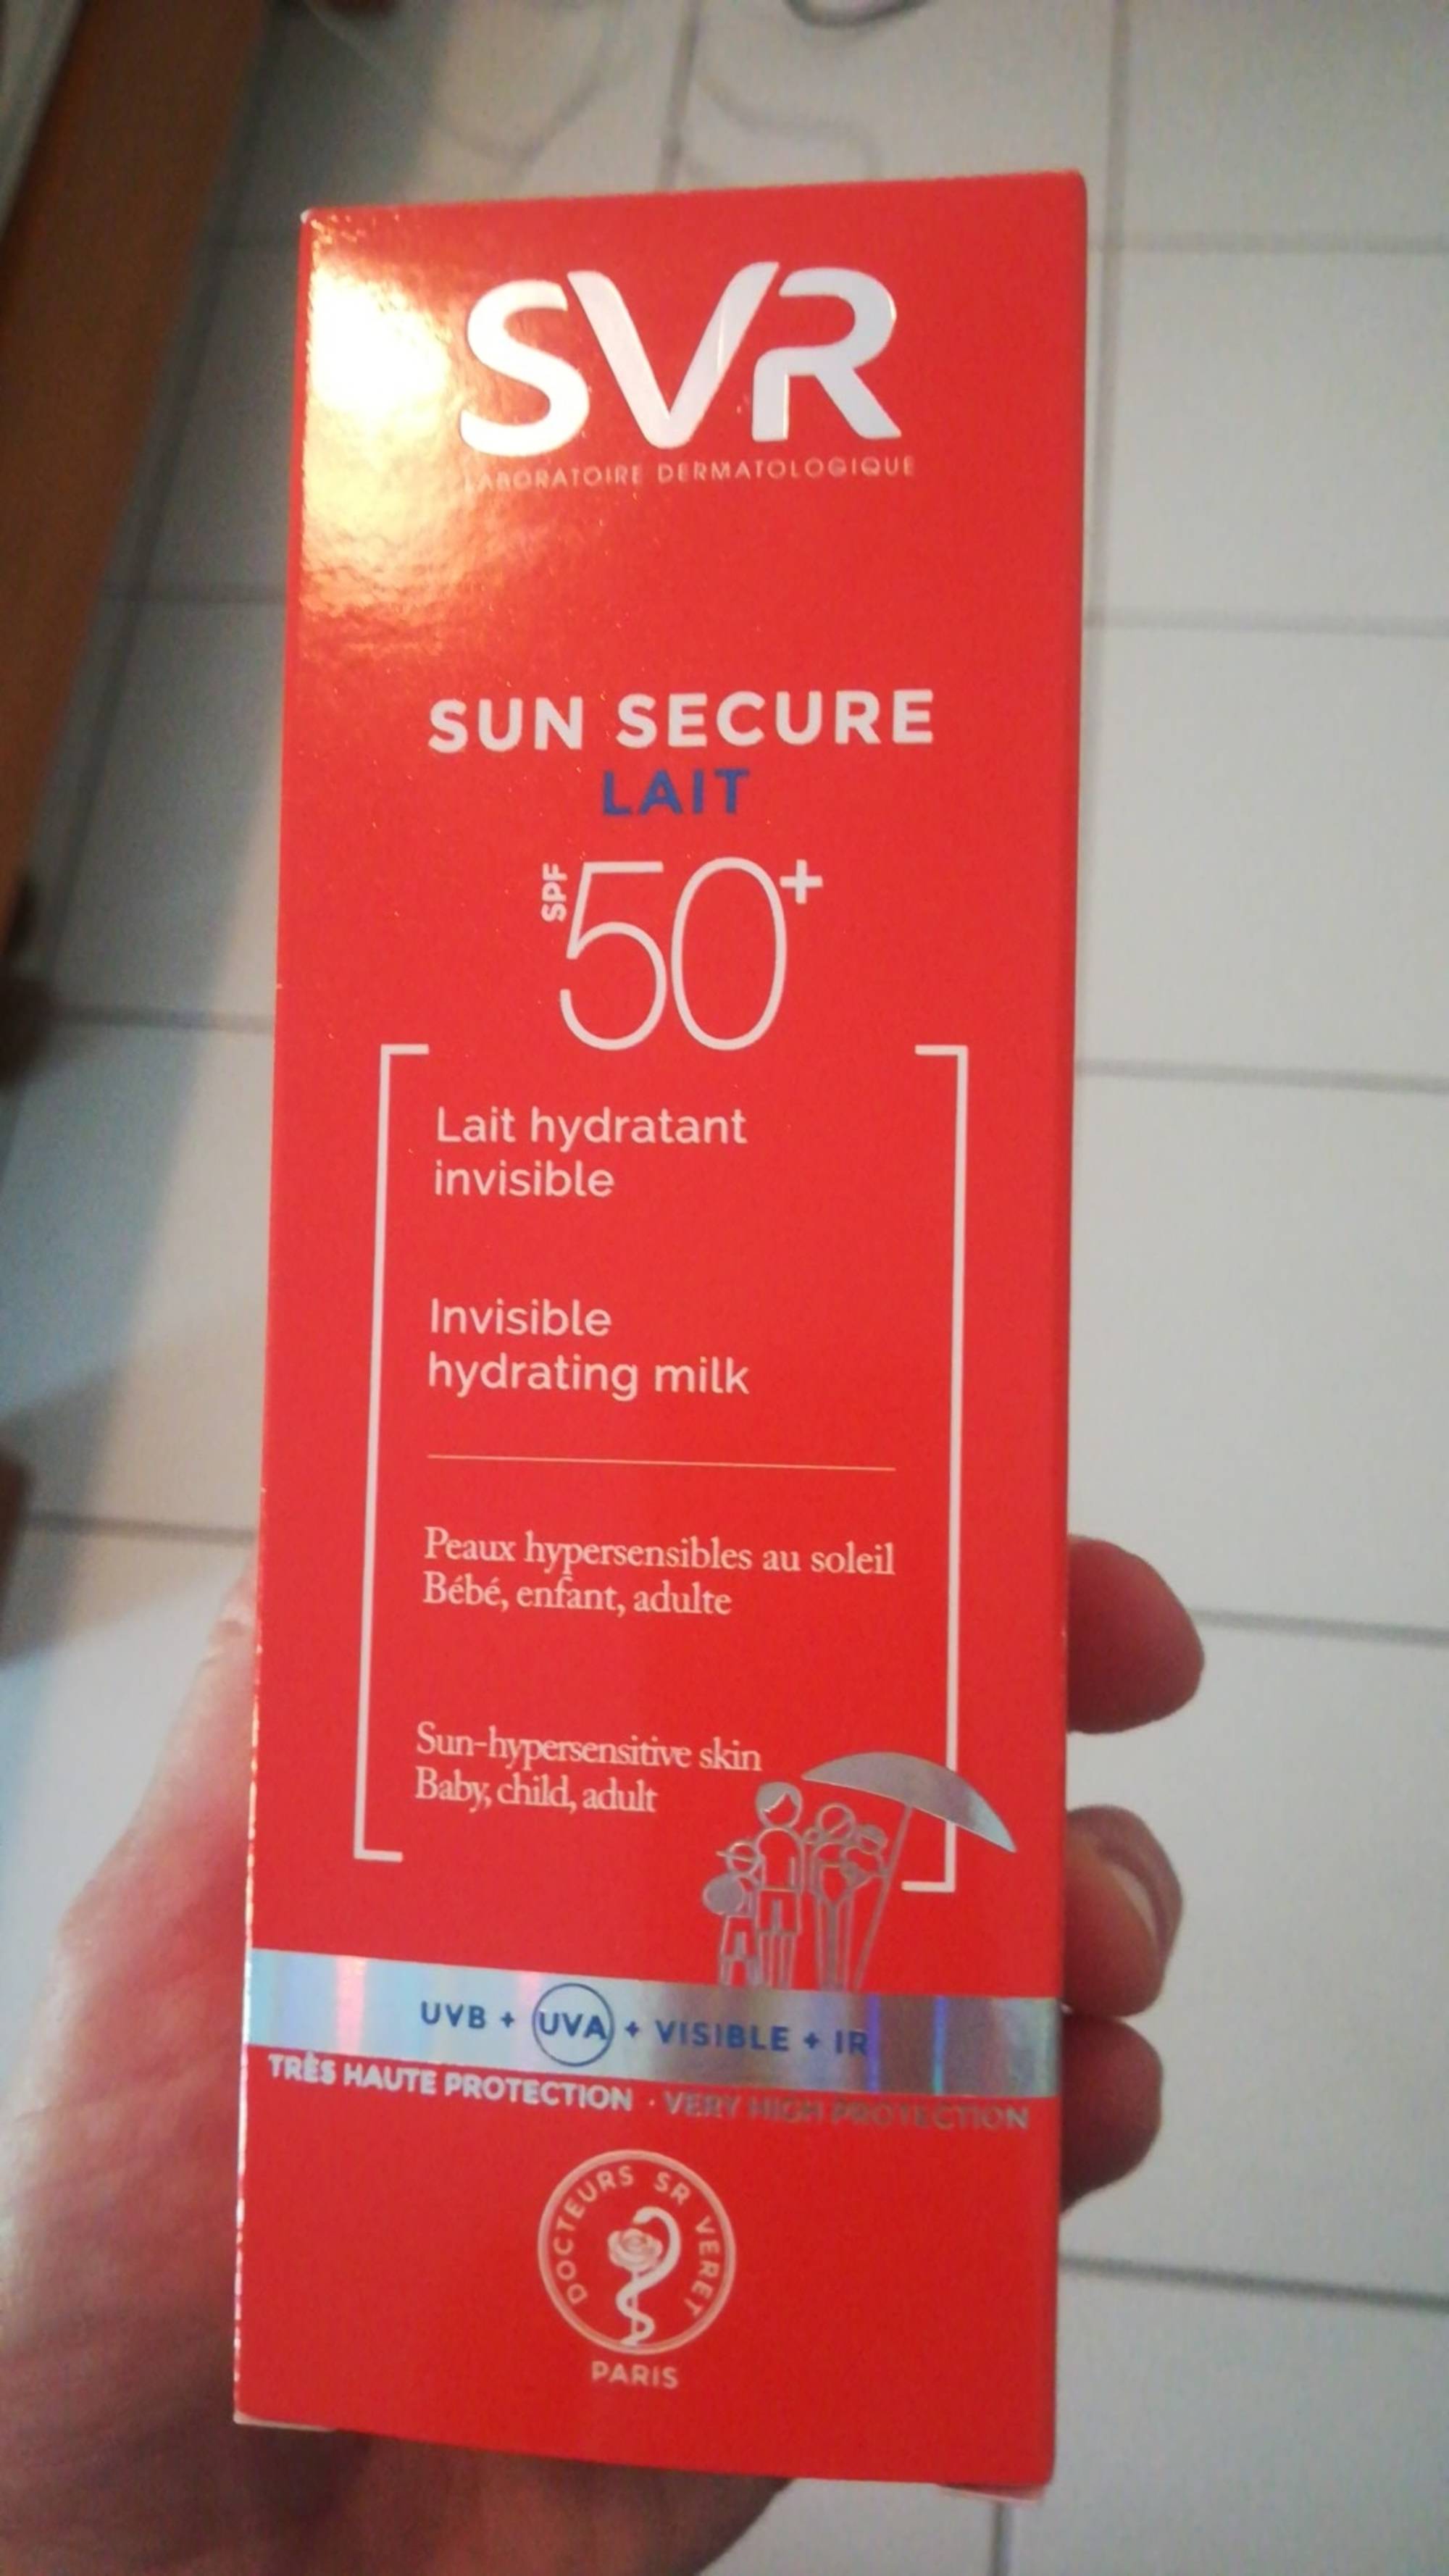 SVR LABORATOIRE DERMATOLOGIQUE - Sun secure - Lait hydratant spf 50+